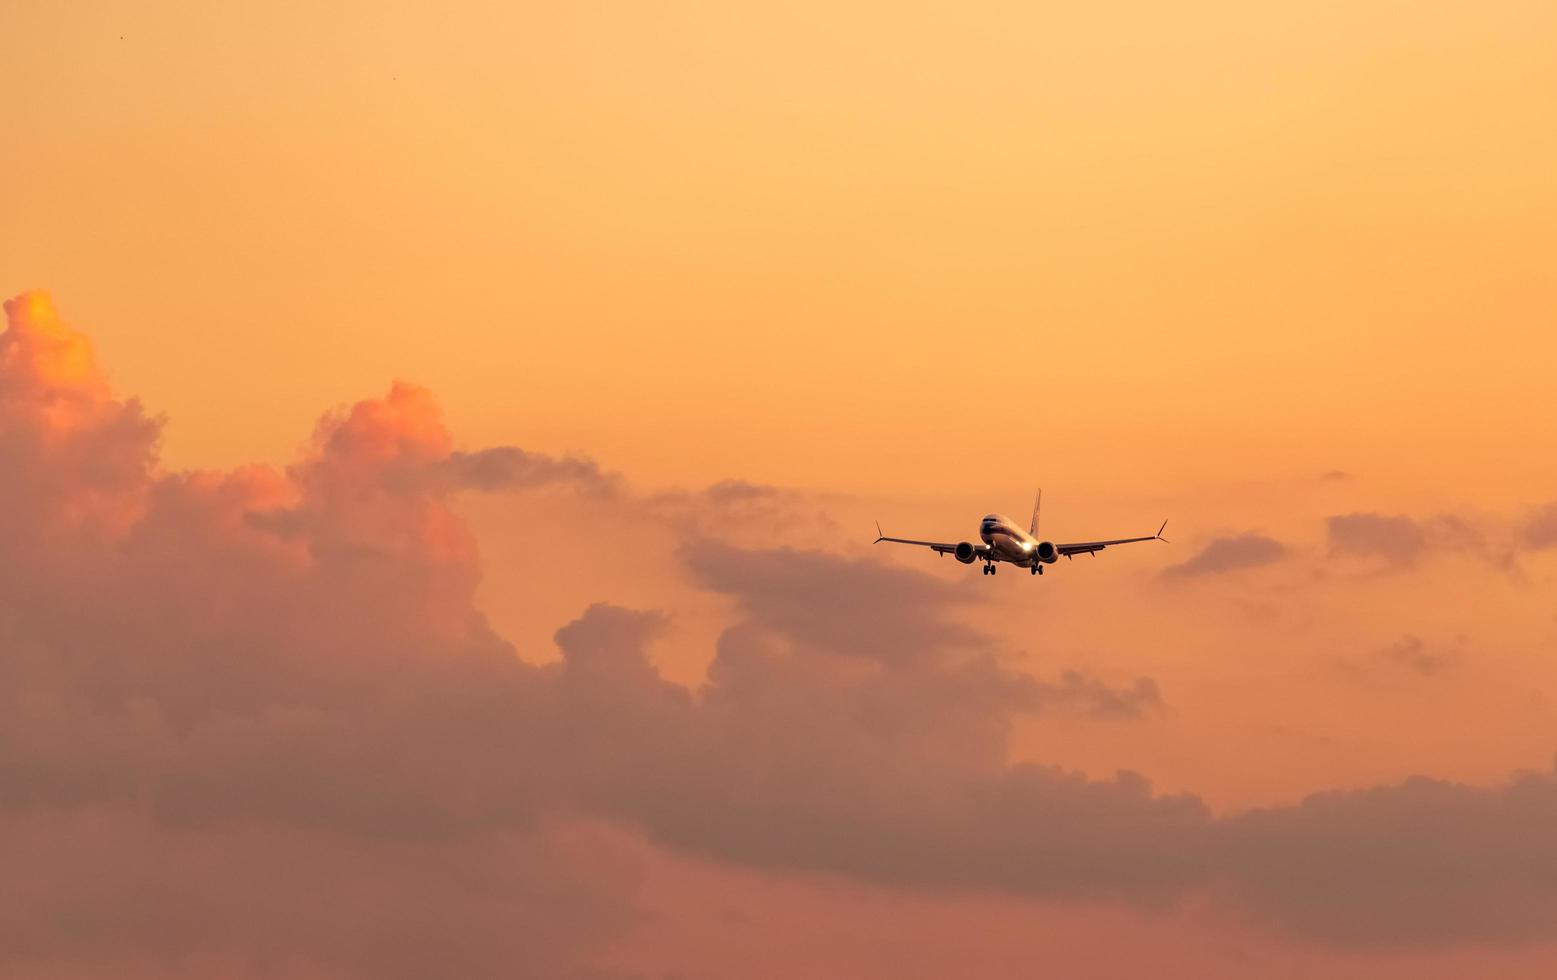 kommerzielle Fluggesellschaft. passagierflugzeug landet am flughafen mit schönem sonnenunterganghimmel und wolken. Ankunftsflug. Flugzeug fliegt in einer Linie zur Landung. Flugzeuge öffnen Licht im Abendflug. foto